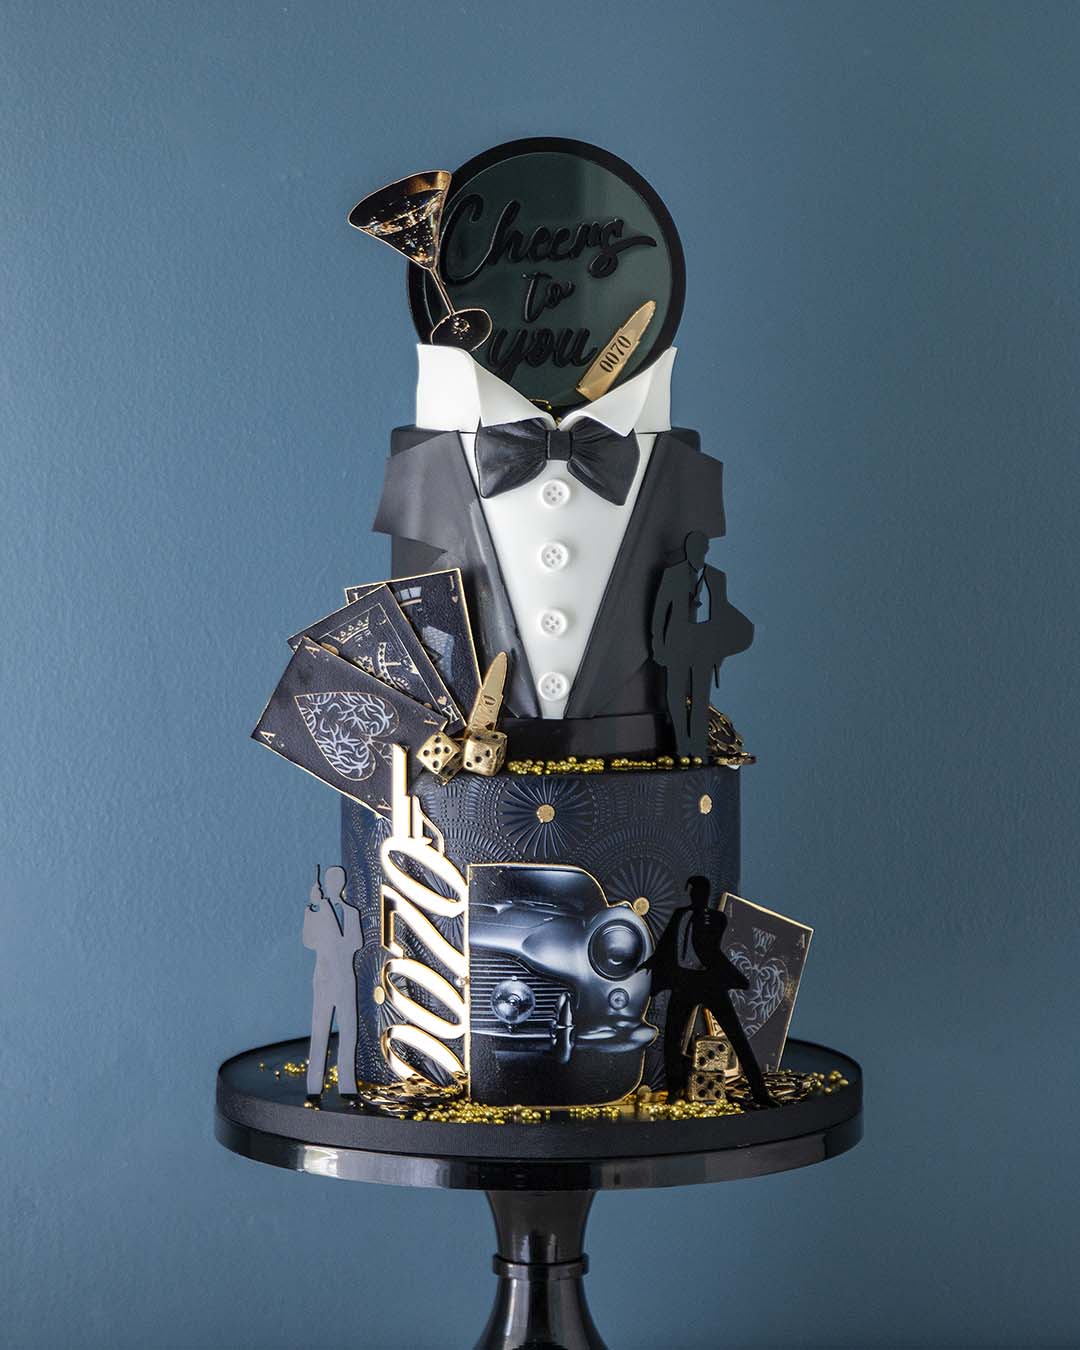 Louis Vuitton fashion themed birthday cake  Birthday cakes for women, 28th birthday  cake, Beautiful birthday cakes